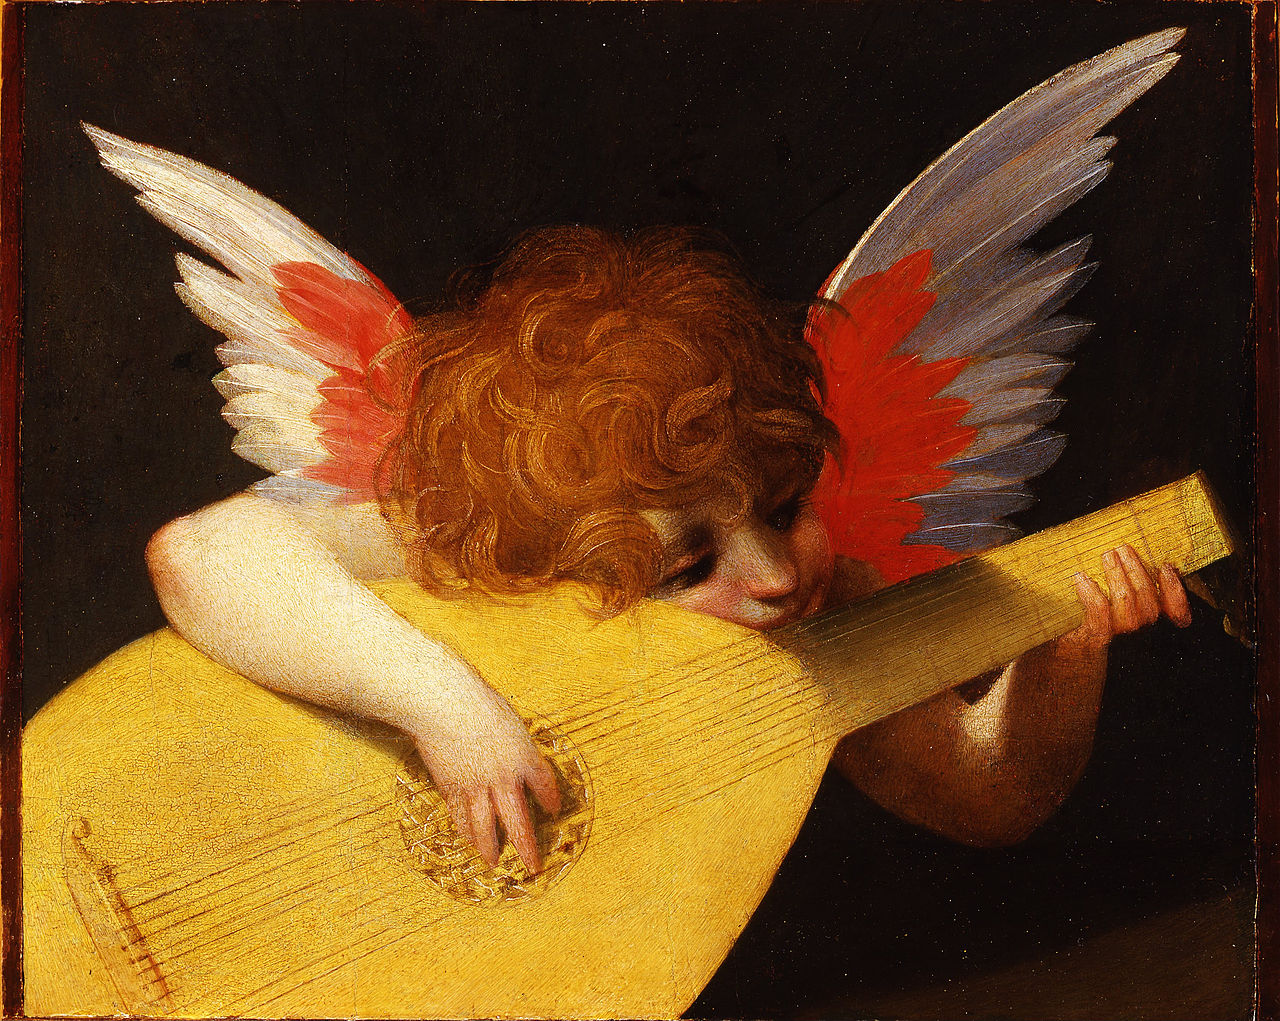 Музицирующий ангел by Rosso Fiorentino - 1522 - 141 x 172 cm 